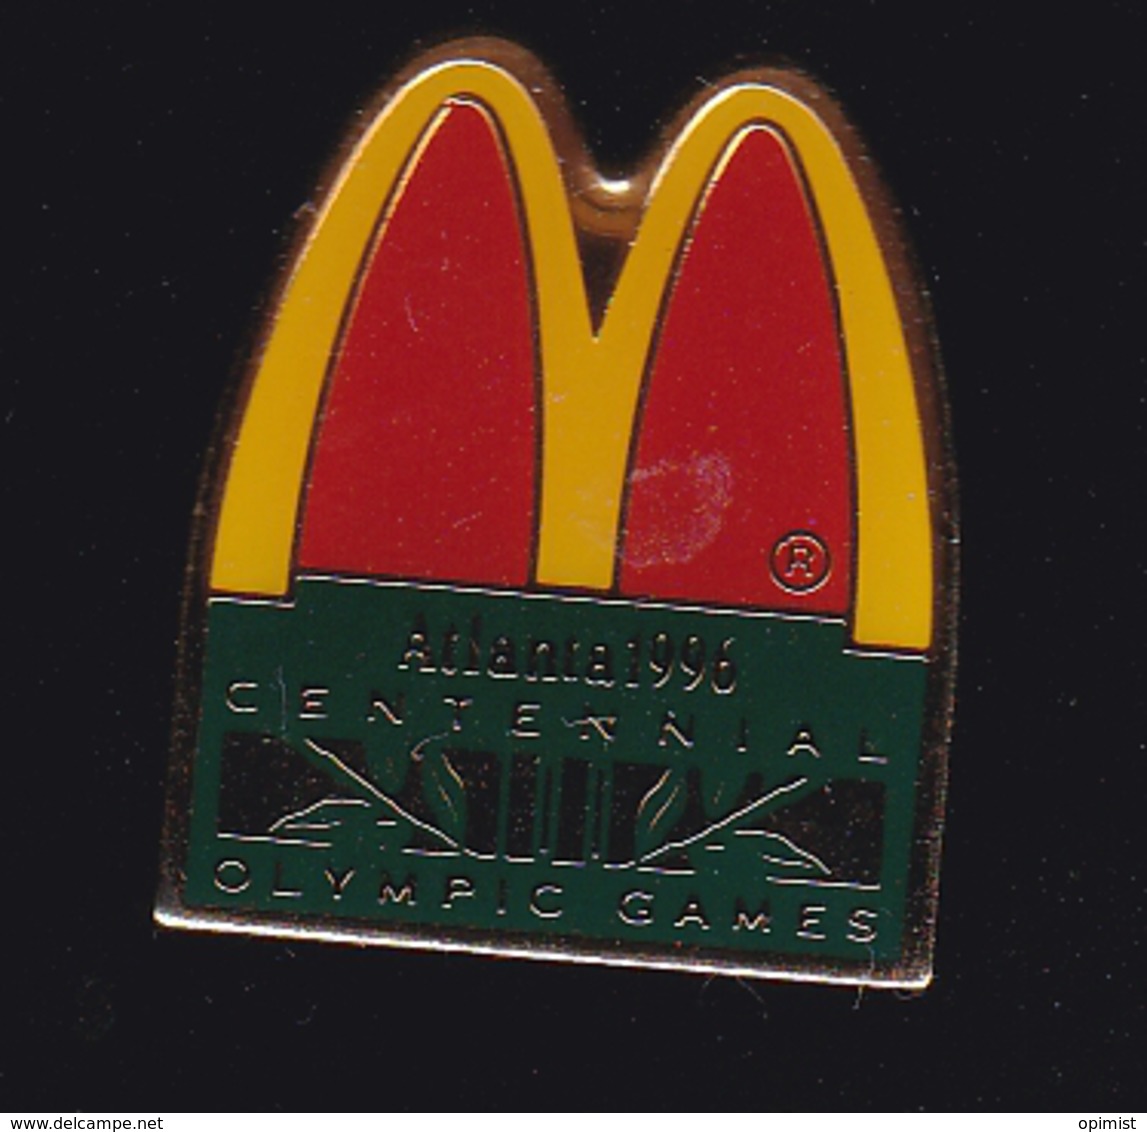 60065- Pin's .M'cDonalds.Atlanta 1996.Jeux Olympiques... - McDonald's